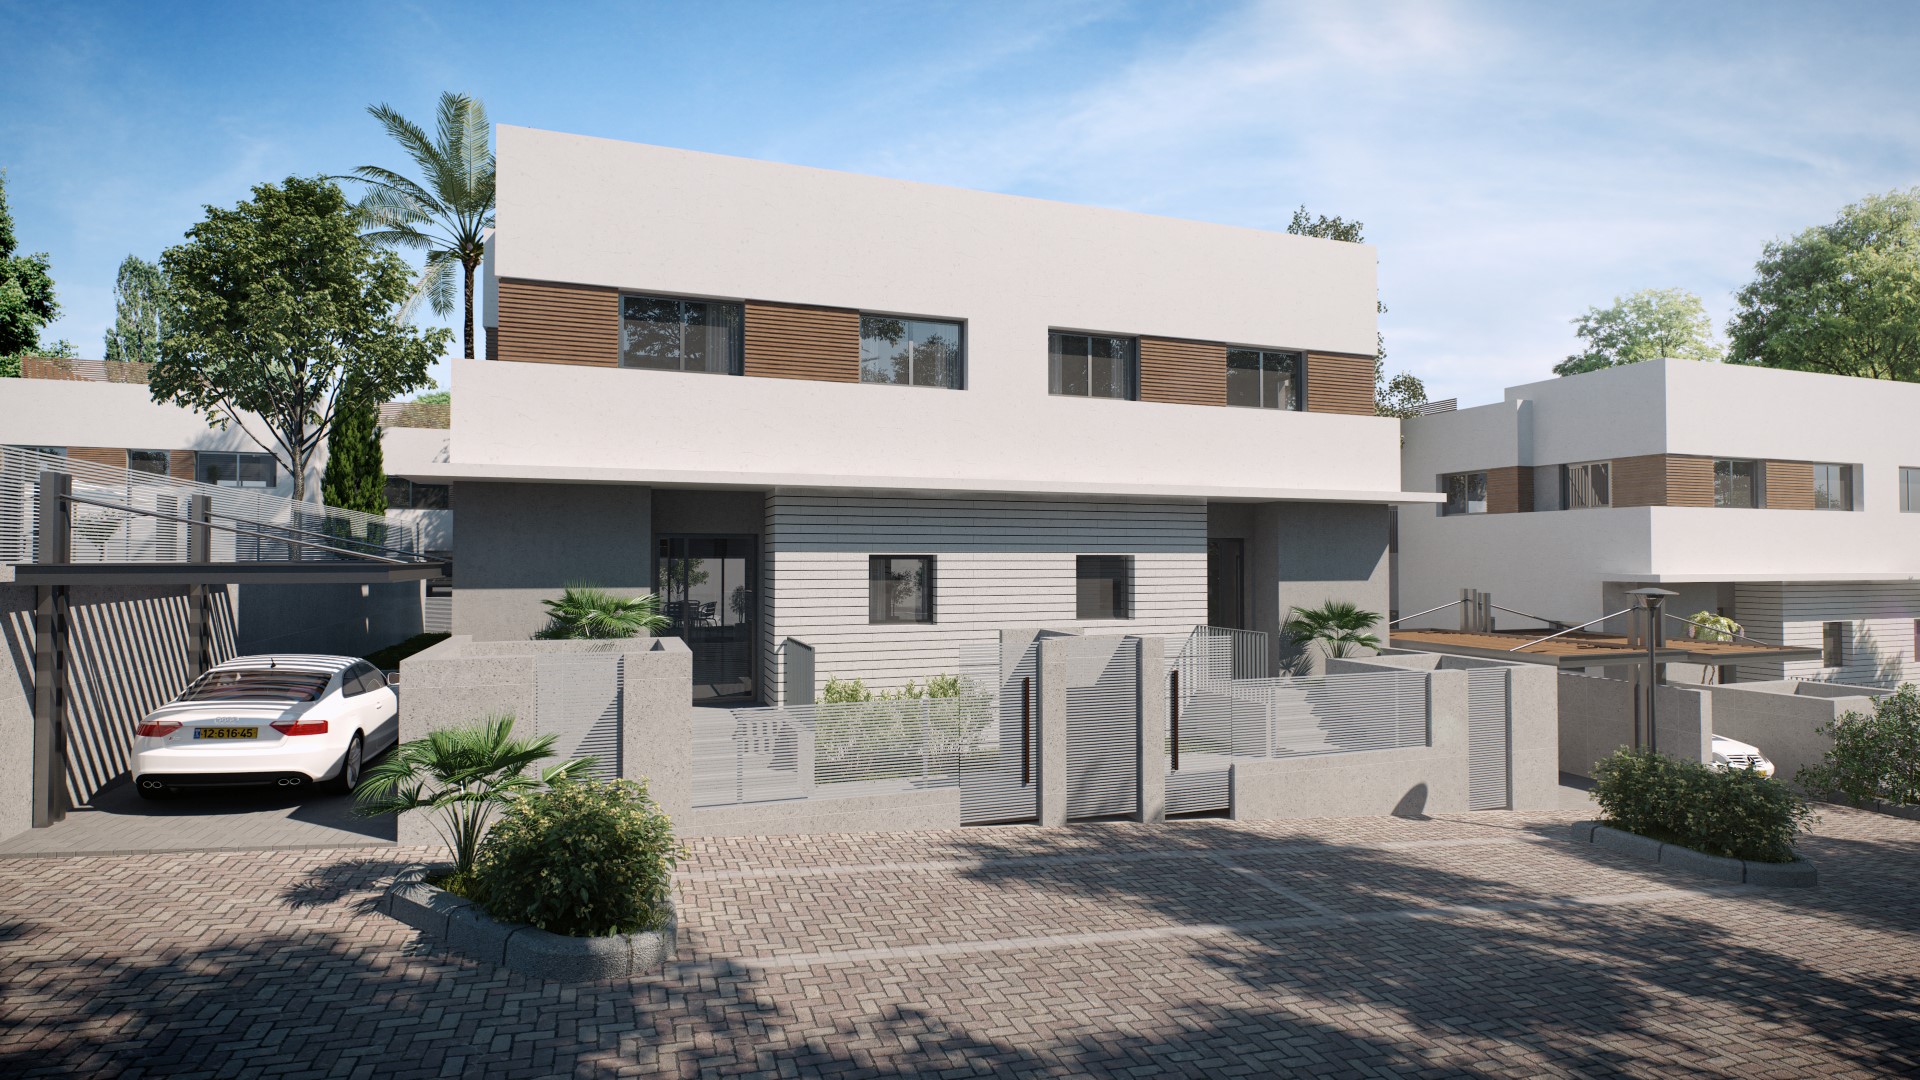 מהיום, קל יותר לרכוש דירה: חברת הנדל"ן ארזים מציעה מסלולי רכישה חדשים בפרויקטים בבאר שבע